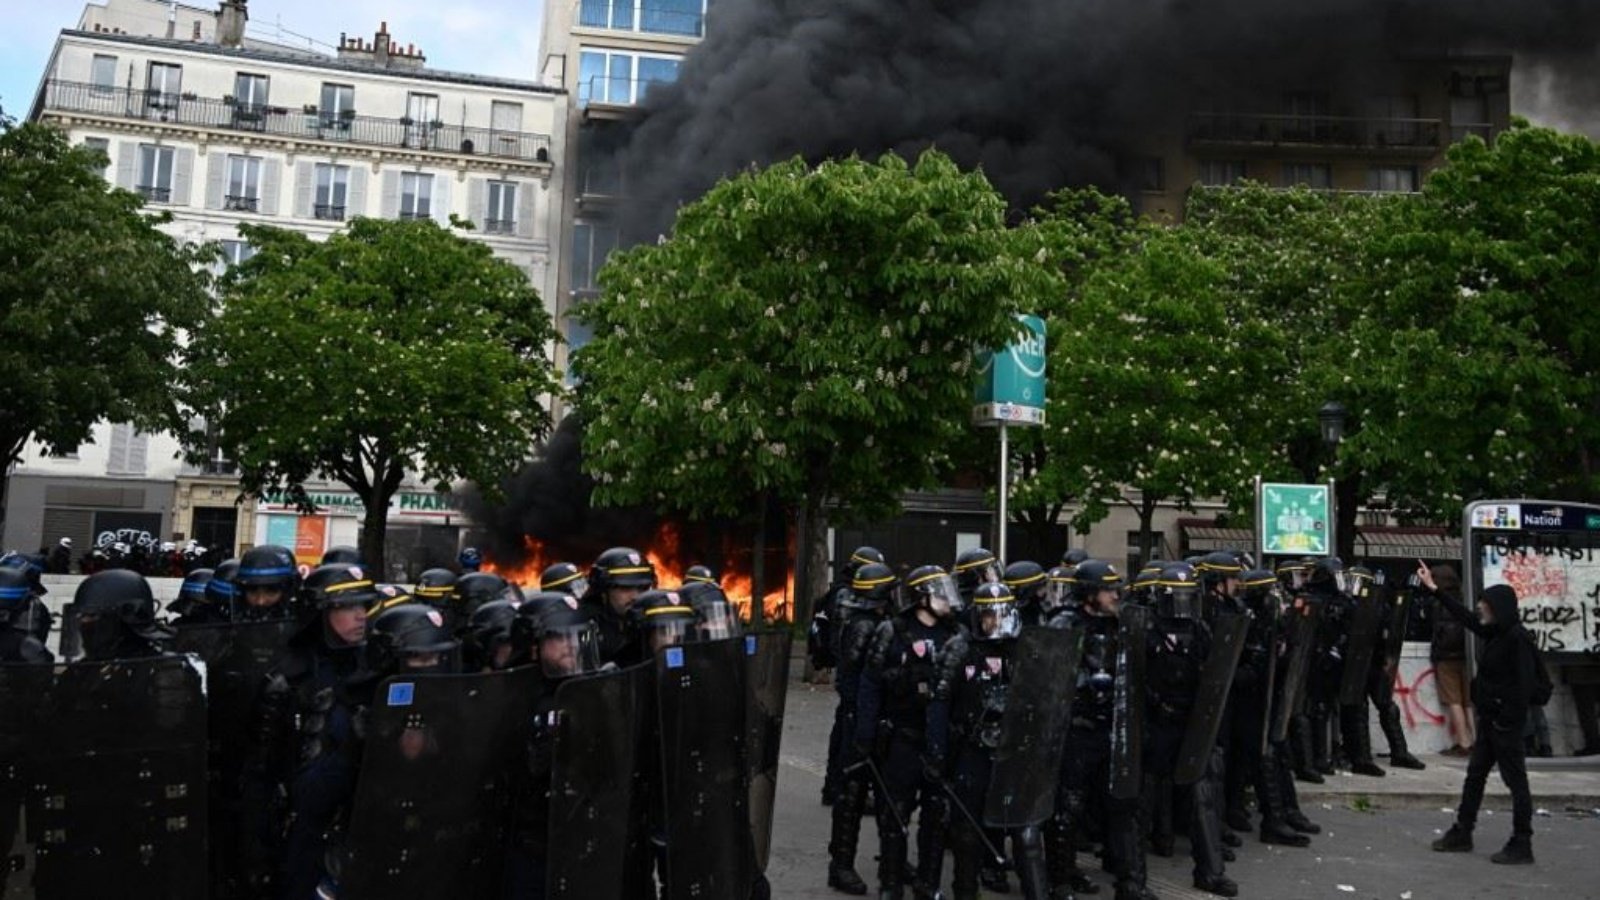 ضباط الشرطة الفرنسية يقفون أمام النار خلال مظاهرة في عيد العمال